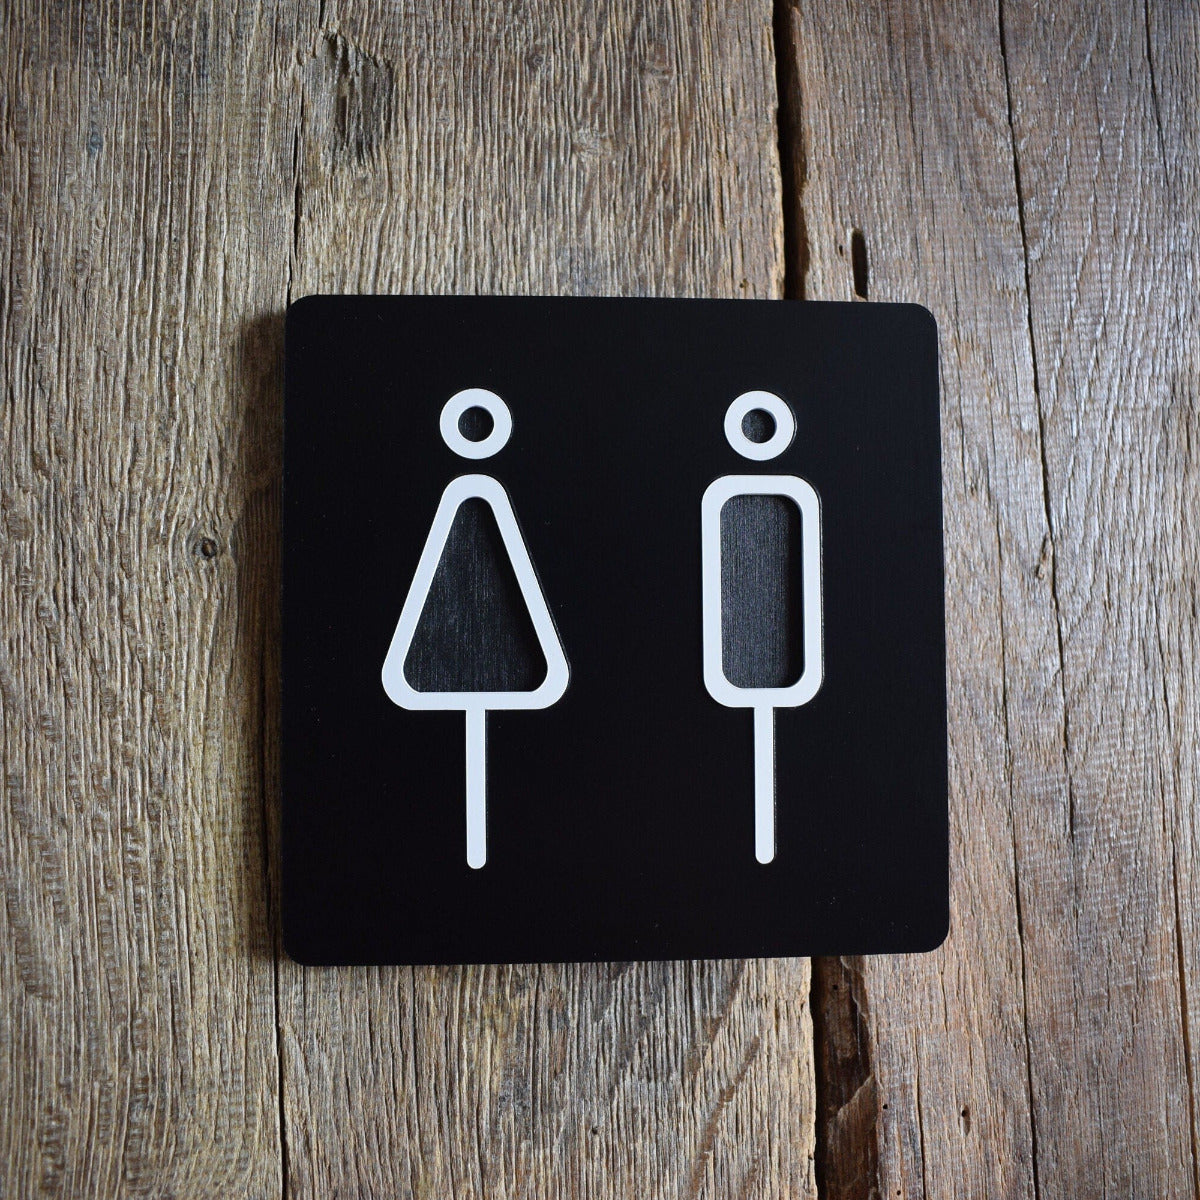 Unisex Toilet Door Sign, Gender Neutral Bathroom Sign, Toilet Door Sign, WC Sign, Toilet Decor, Toilet Plate, Toilet Plaque